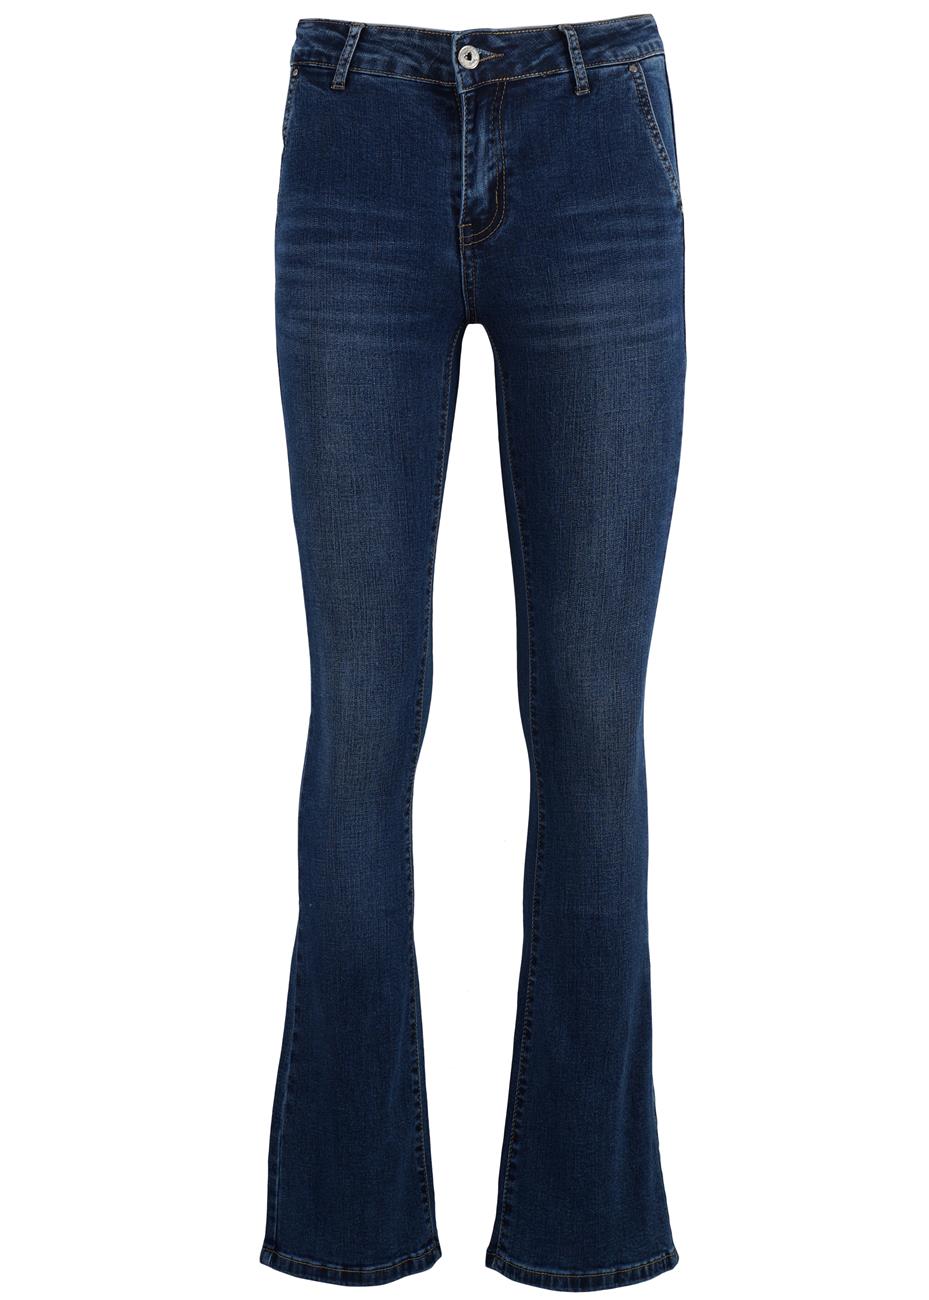 Παντελόνι jeans boot-cut ελαστικό ψηλόμεσο. Denim collection